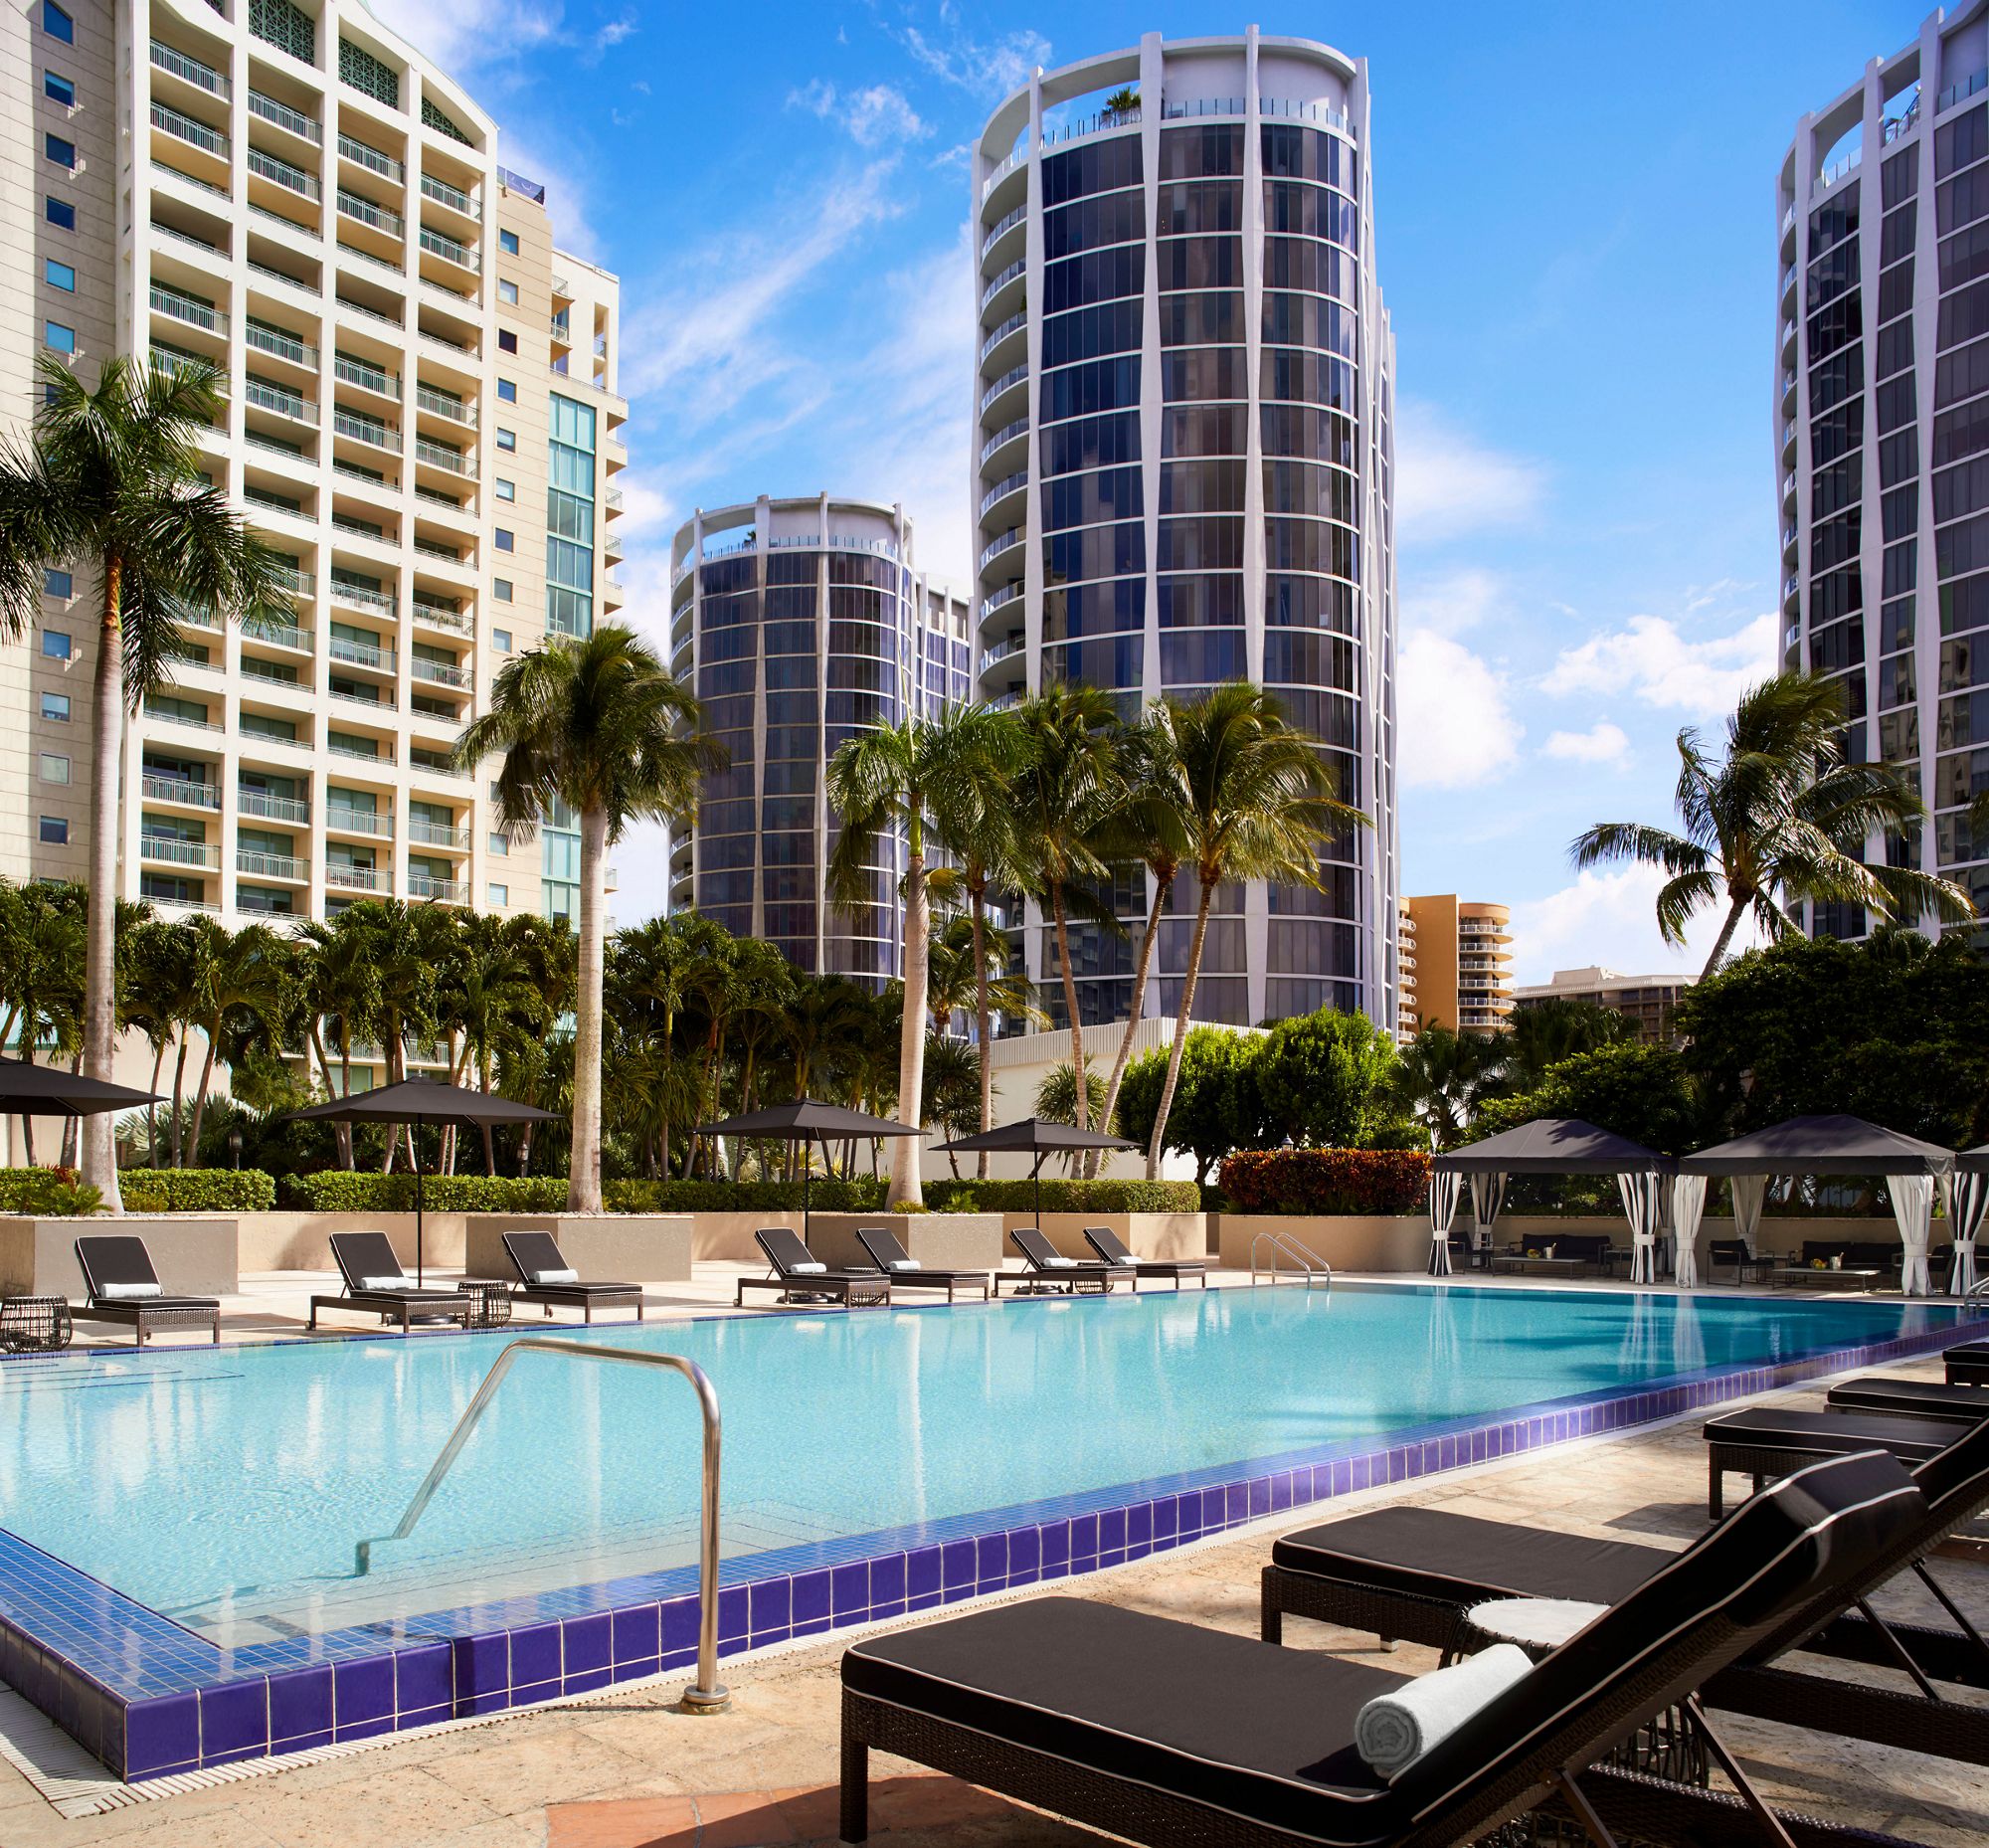 Luxury Hotels Downtown Miami The Ritz Carlton Coconut Grove Miami